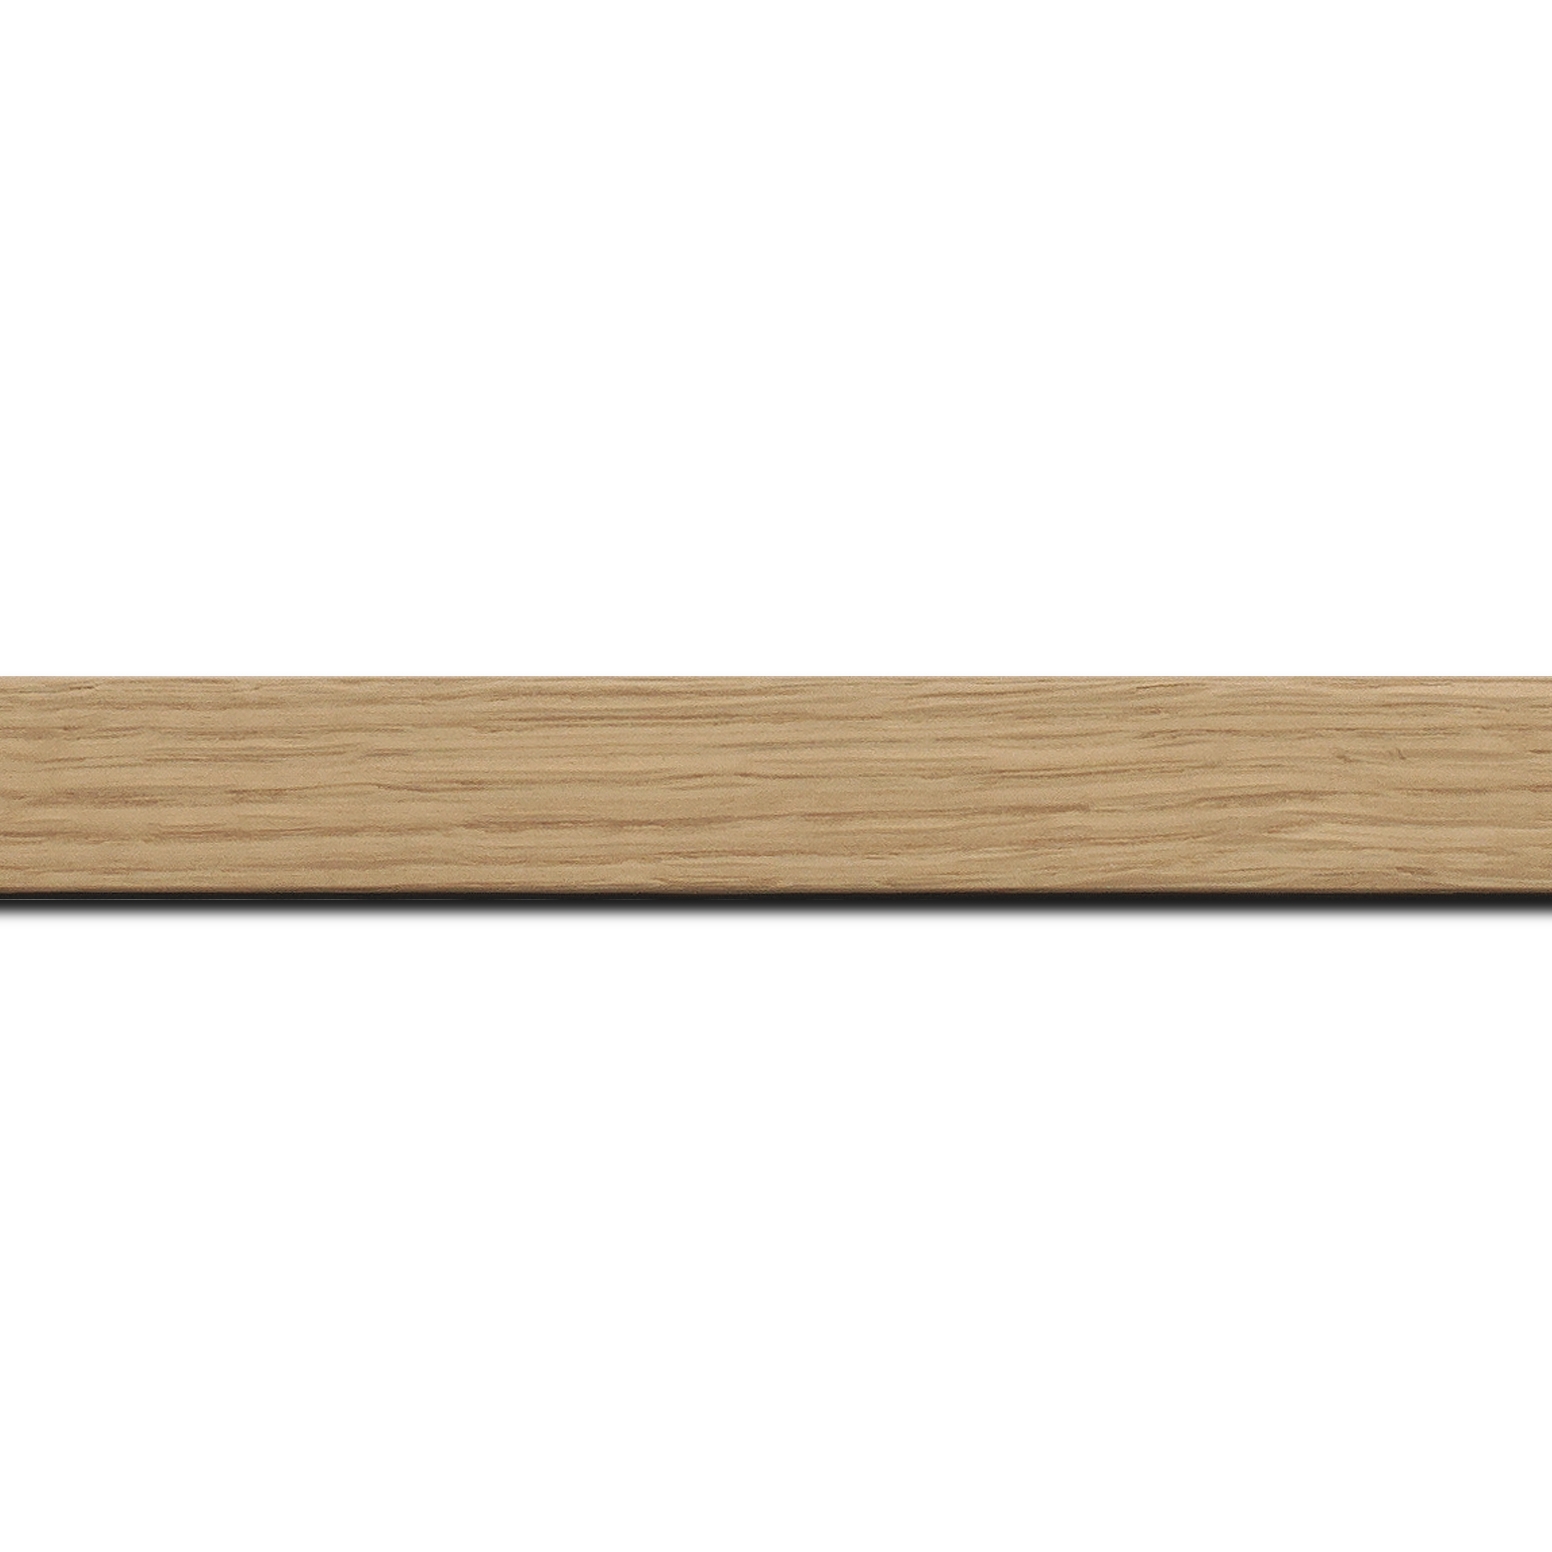 Pack par 12m, bois profil plat largeur 2.5cm plaquage haut de gamme chêne naturel(longueur baguette pouvant varier entre 2.40m et 3m selon arrivage des bois)